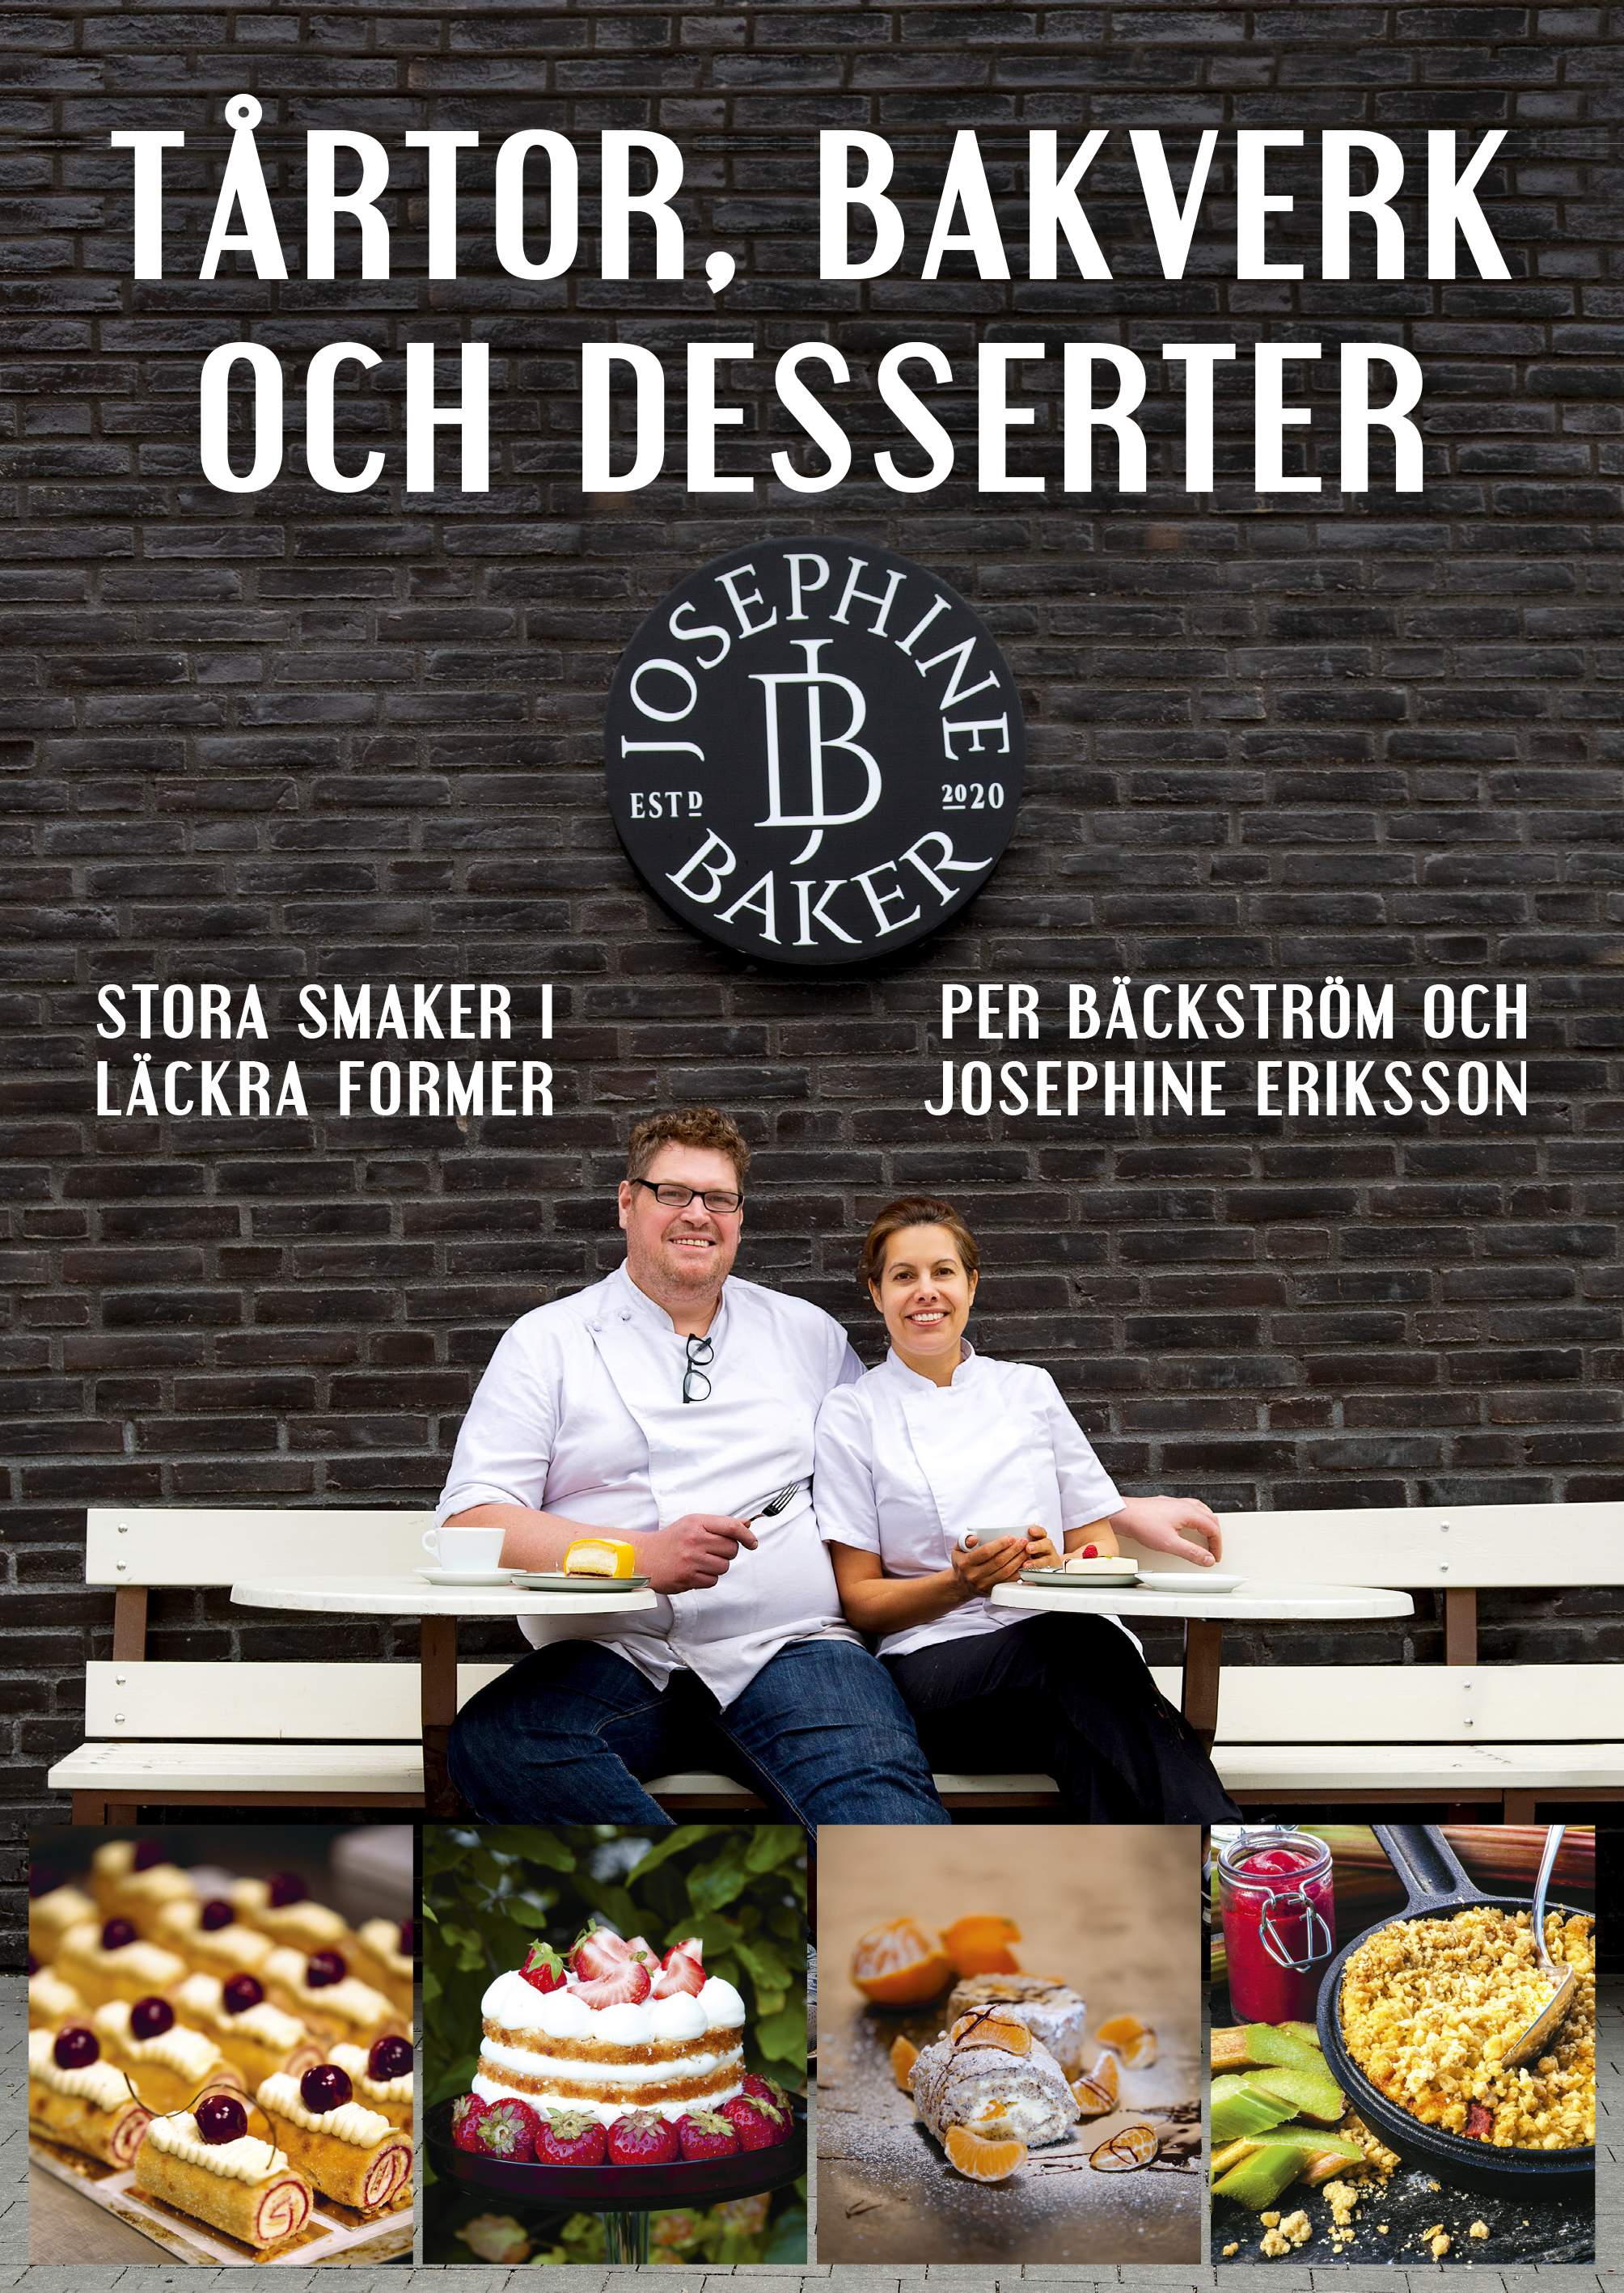 Tårtor, bakverk och desserter av Per Bäckström och Josephine Eriksson, Grenadine Bokförlag.